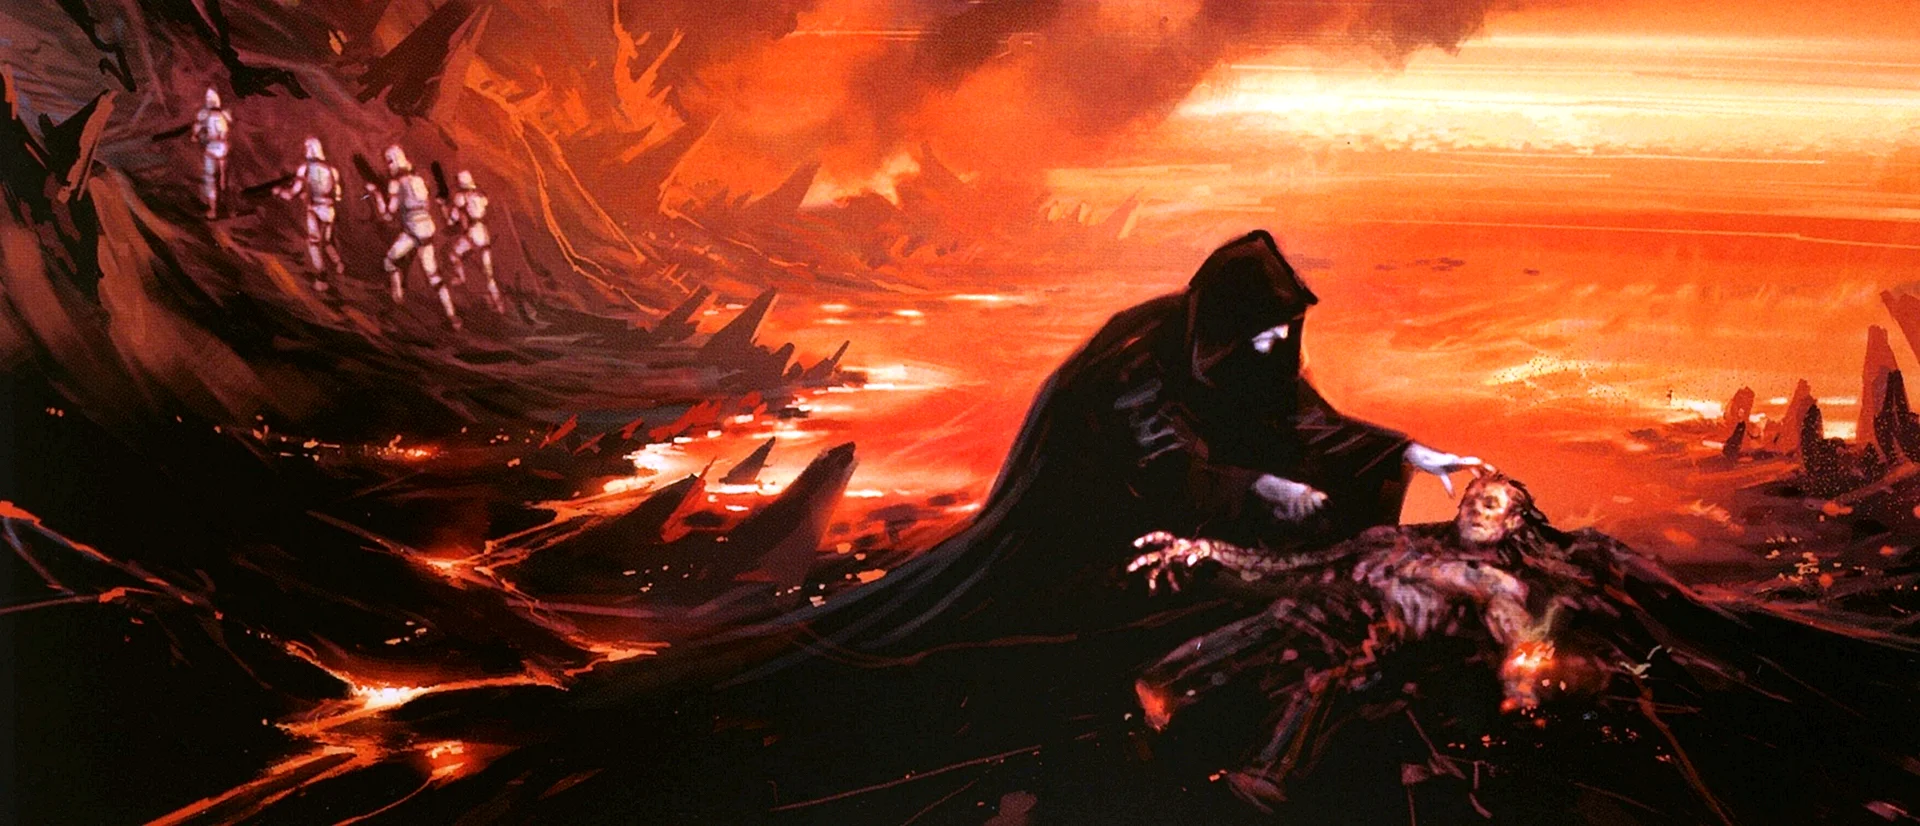 Revenge Of The Sith Concept Art Wallpaper